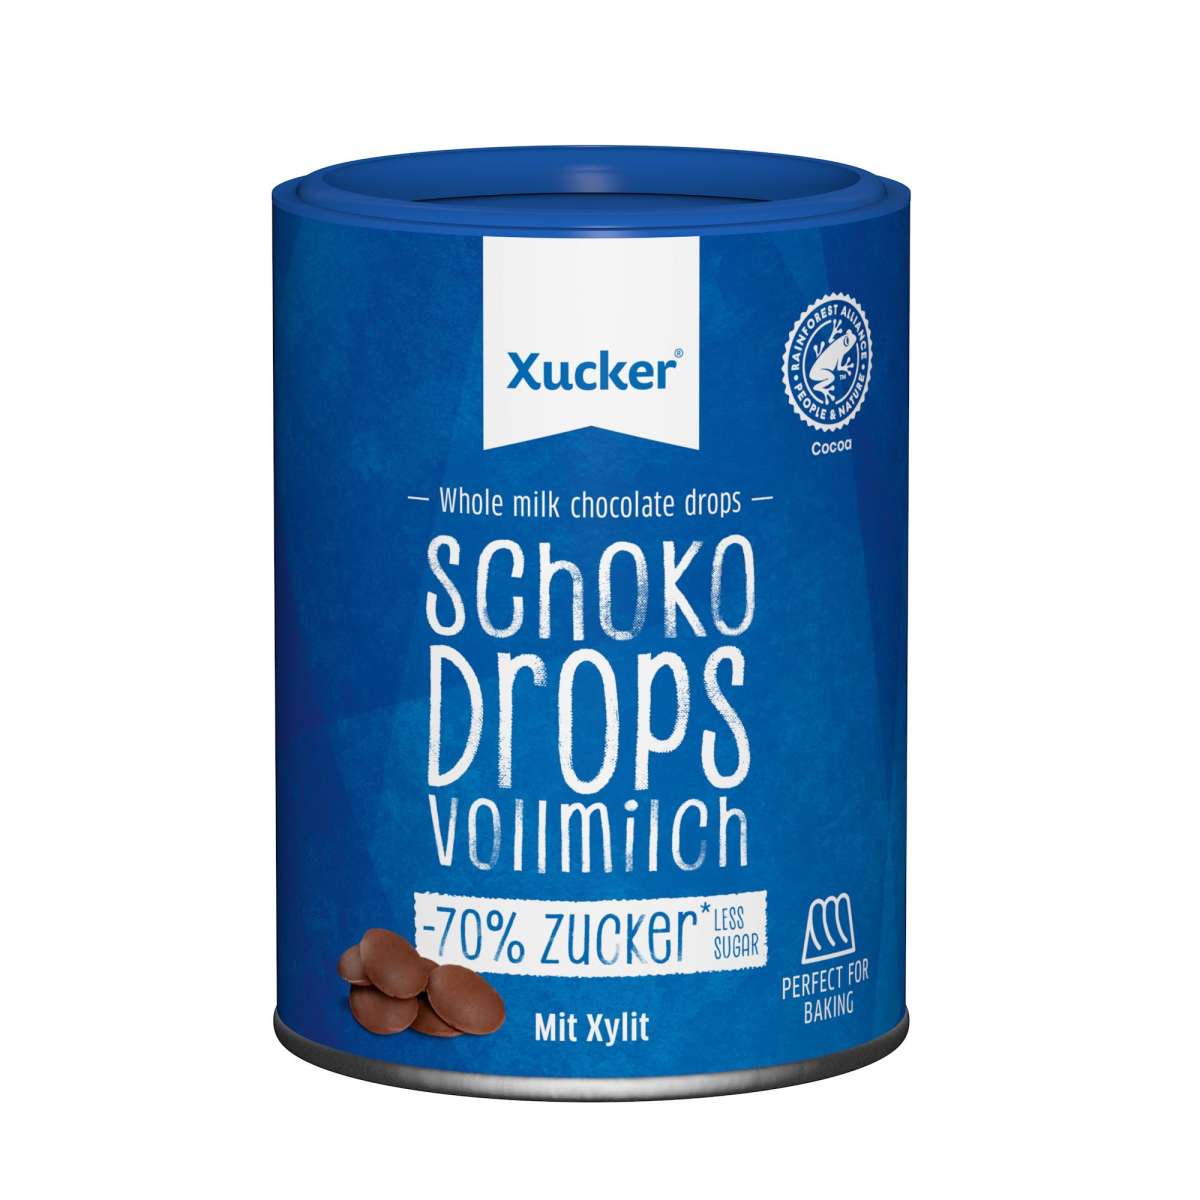 Xucker Schoko-Drops Vollmilch mit Xylit - 200g